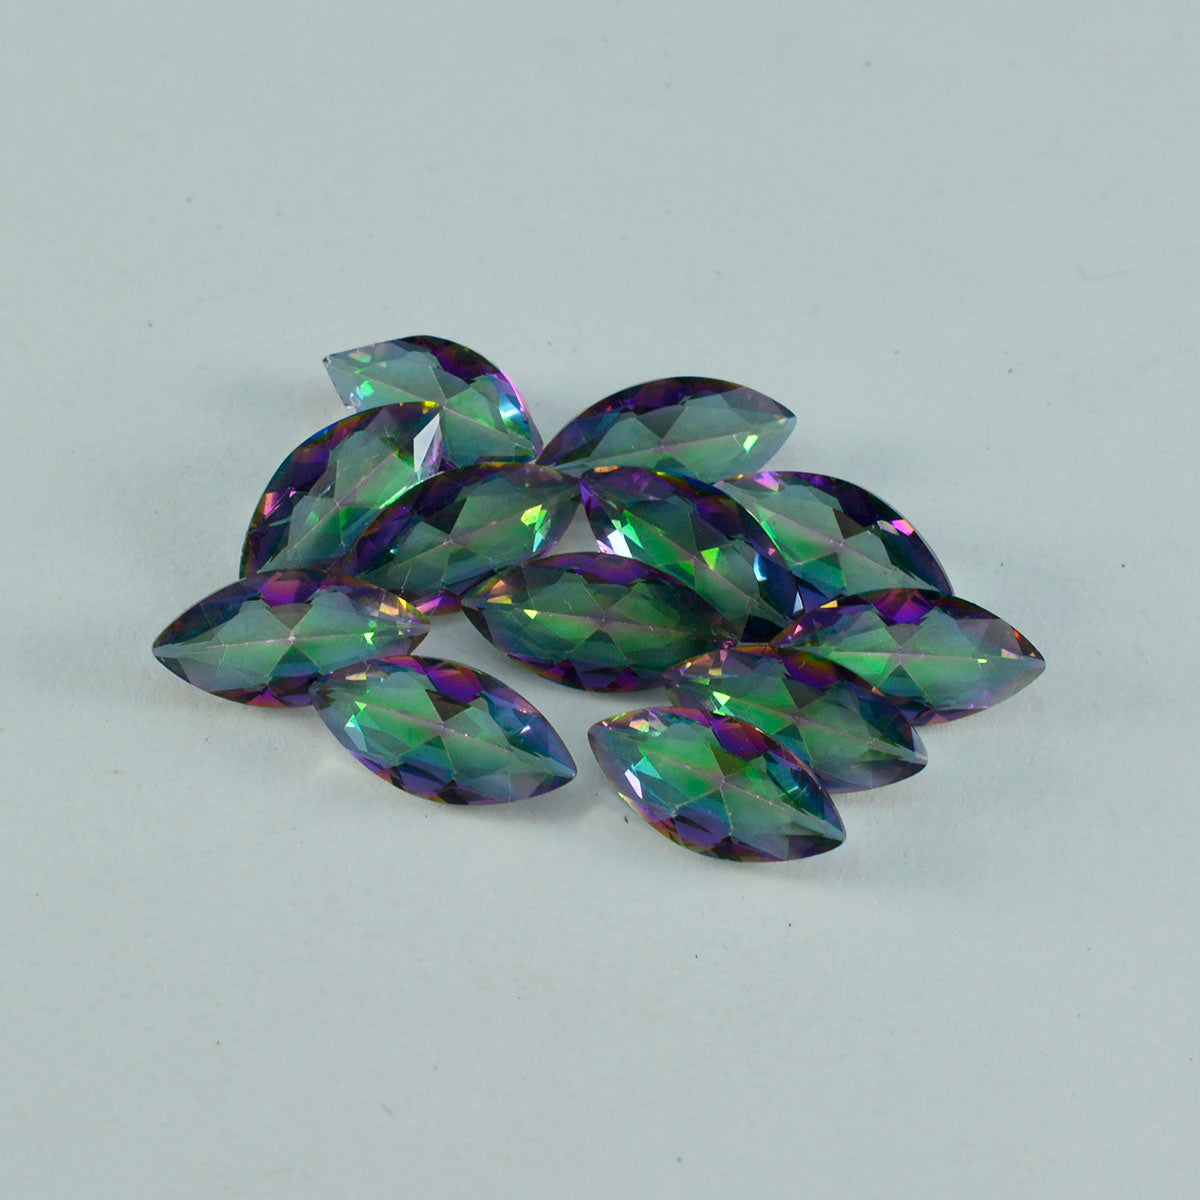 Riyogems 1pc quartz mystique multicolore à facettes 6x12mm forme marquise qualité incroyable pierre en vrac